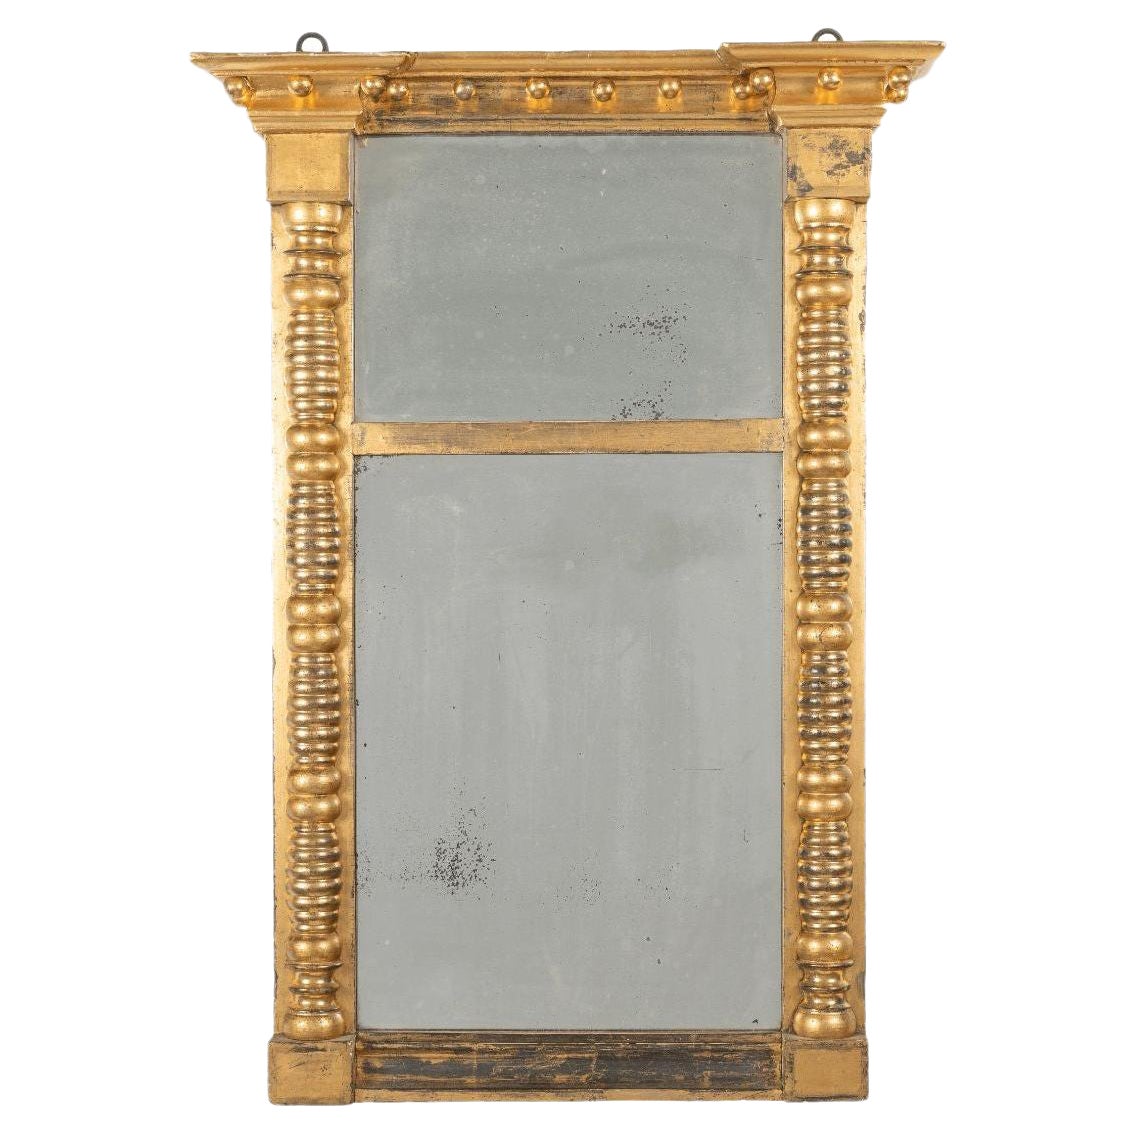 Vergoldeter Tabernakel-Pfeilerspiegel, amerikanisches Neuengland, frühes 19. Jahrhundert